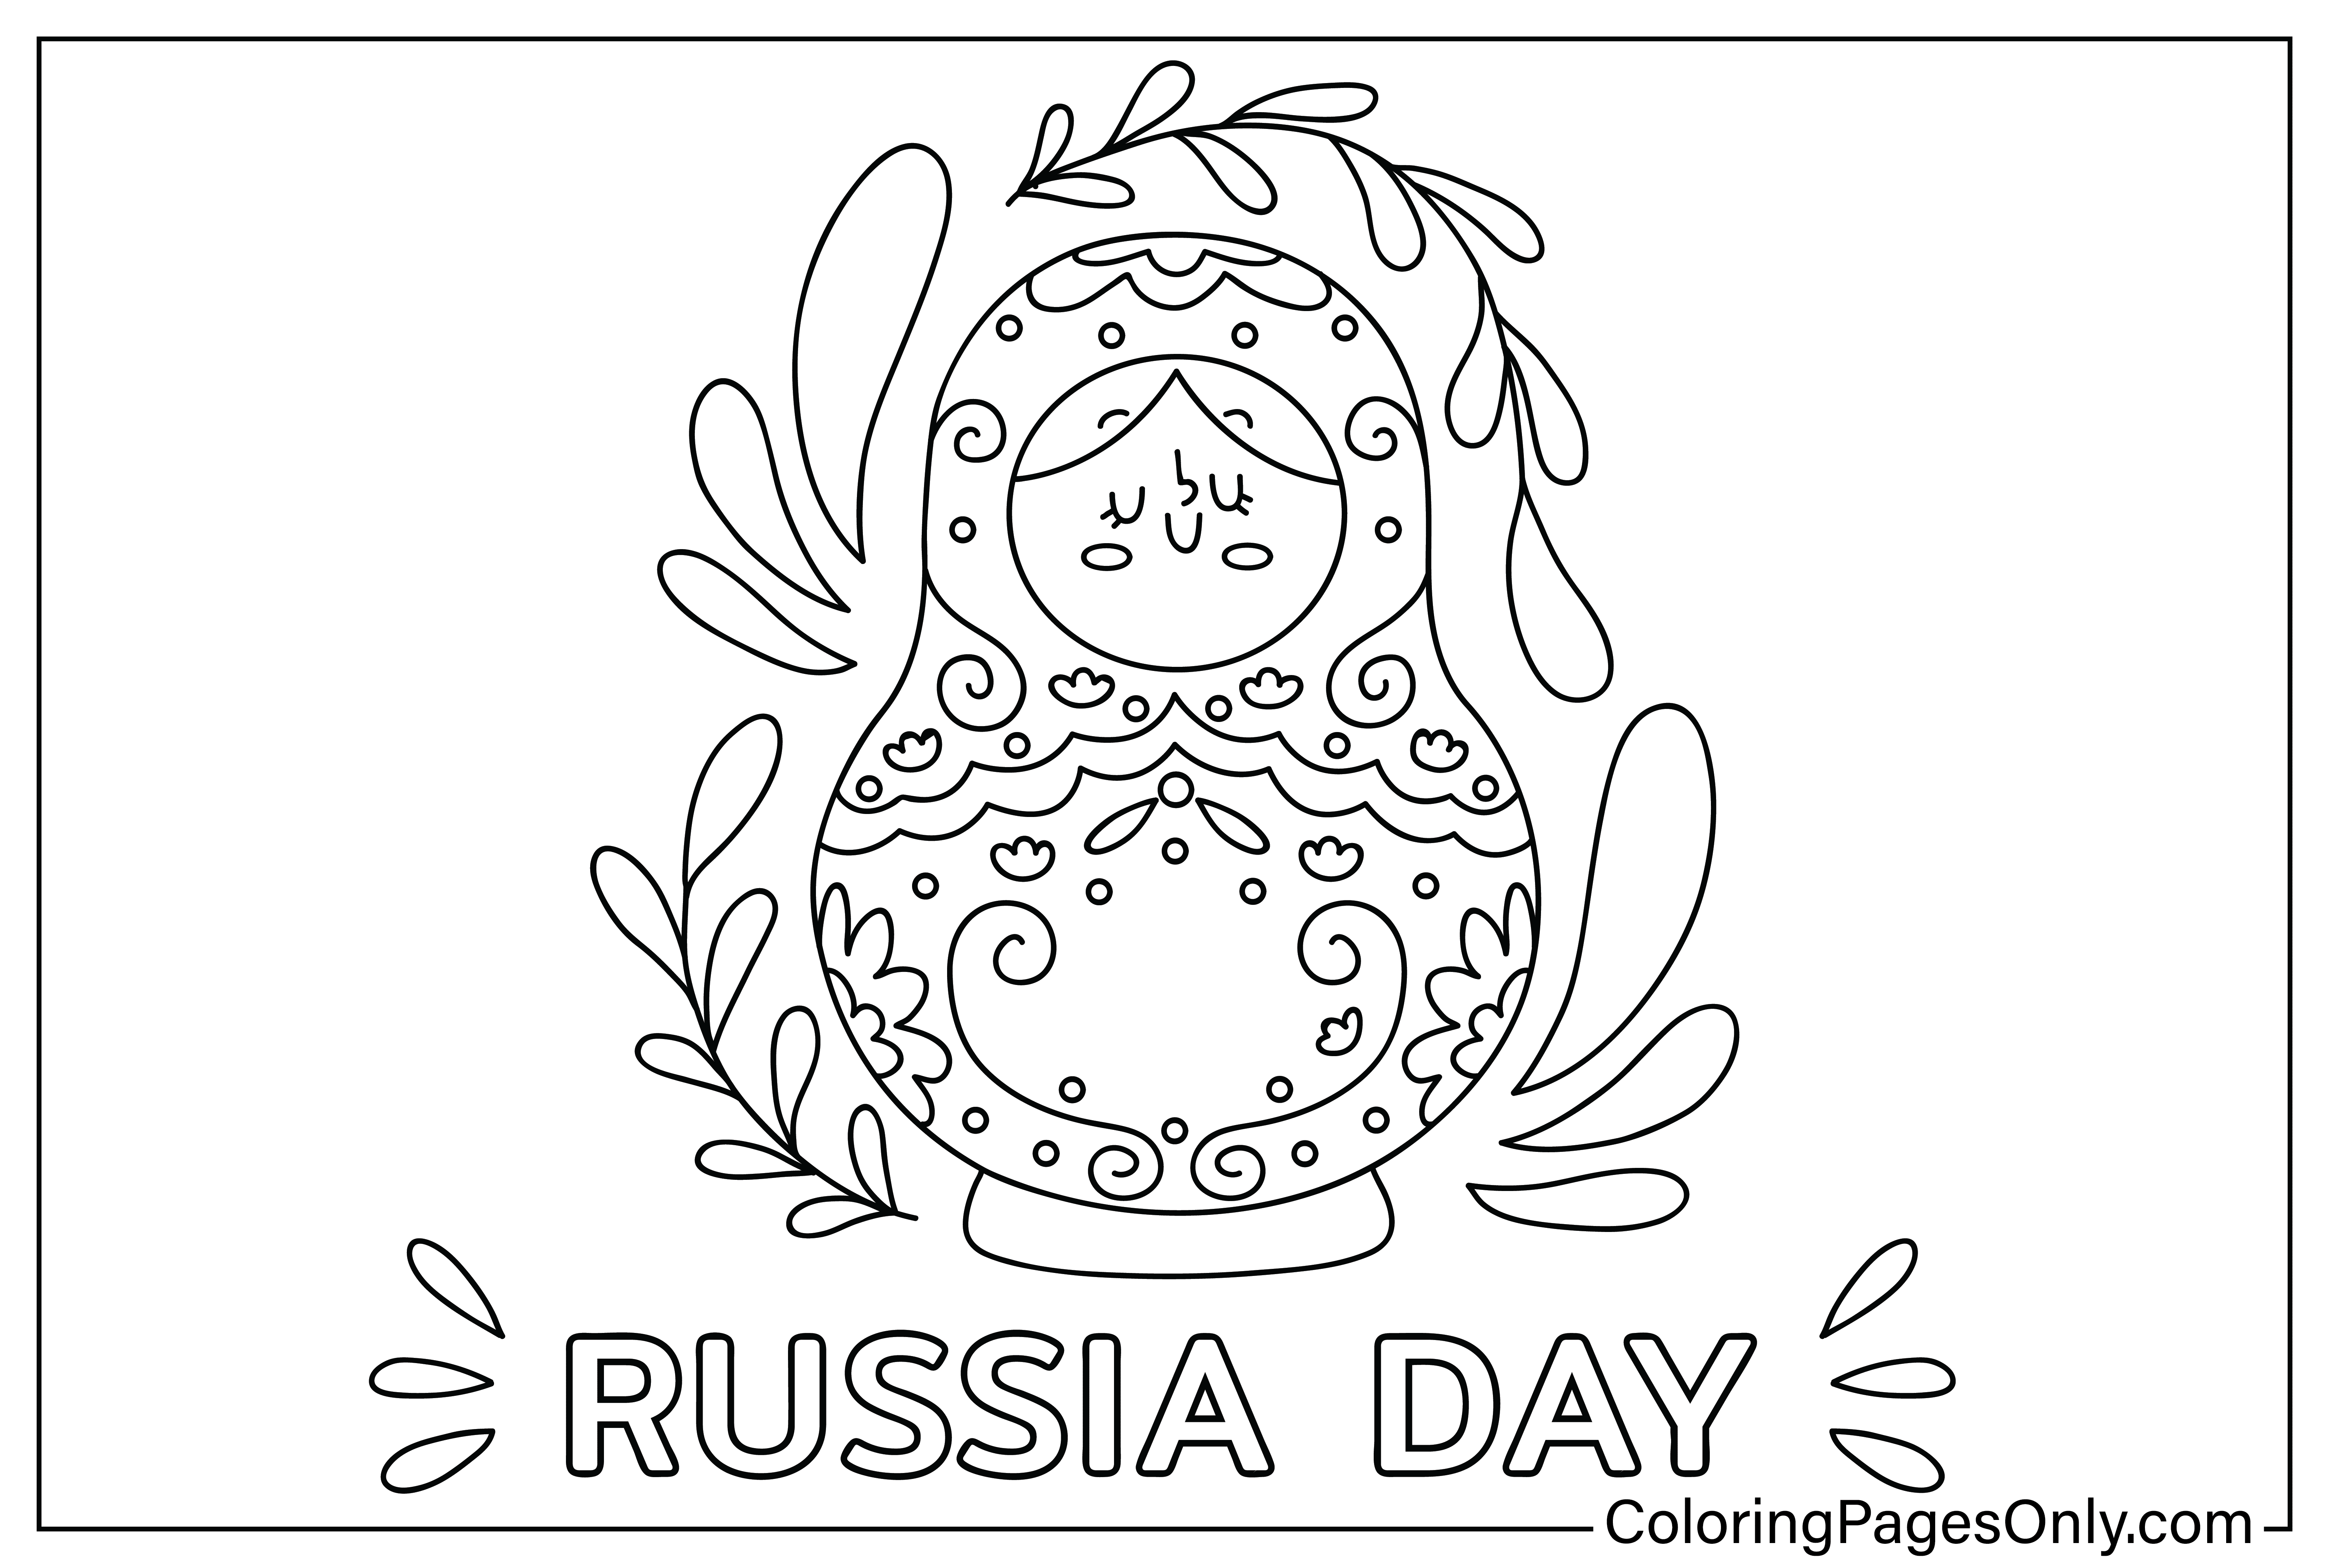 صفحة تلوين يوم روسيا من روسيا